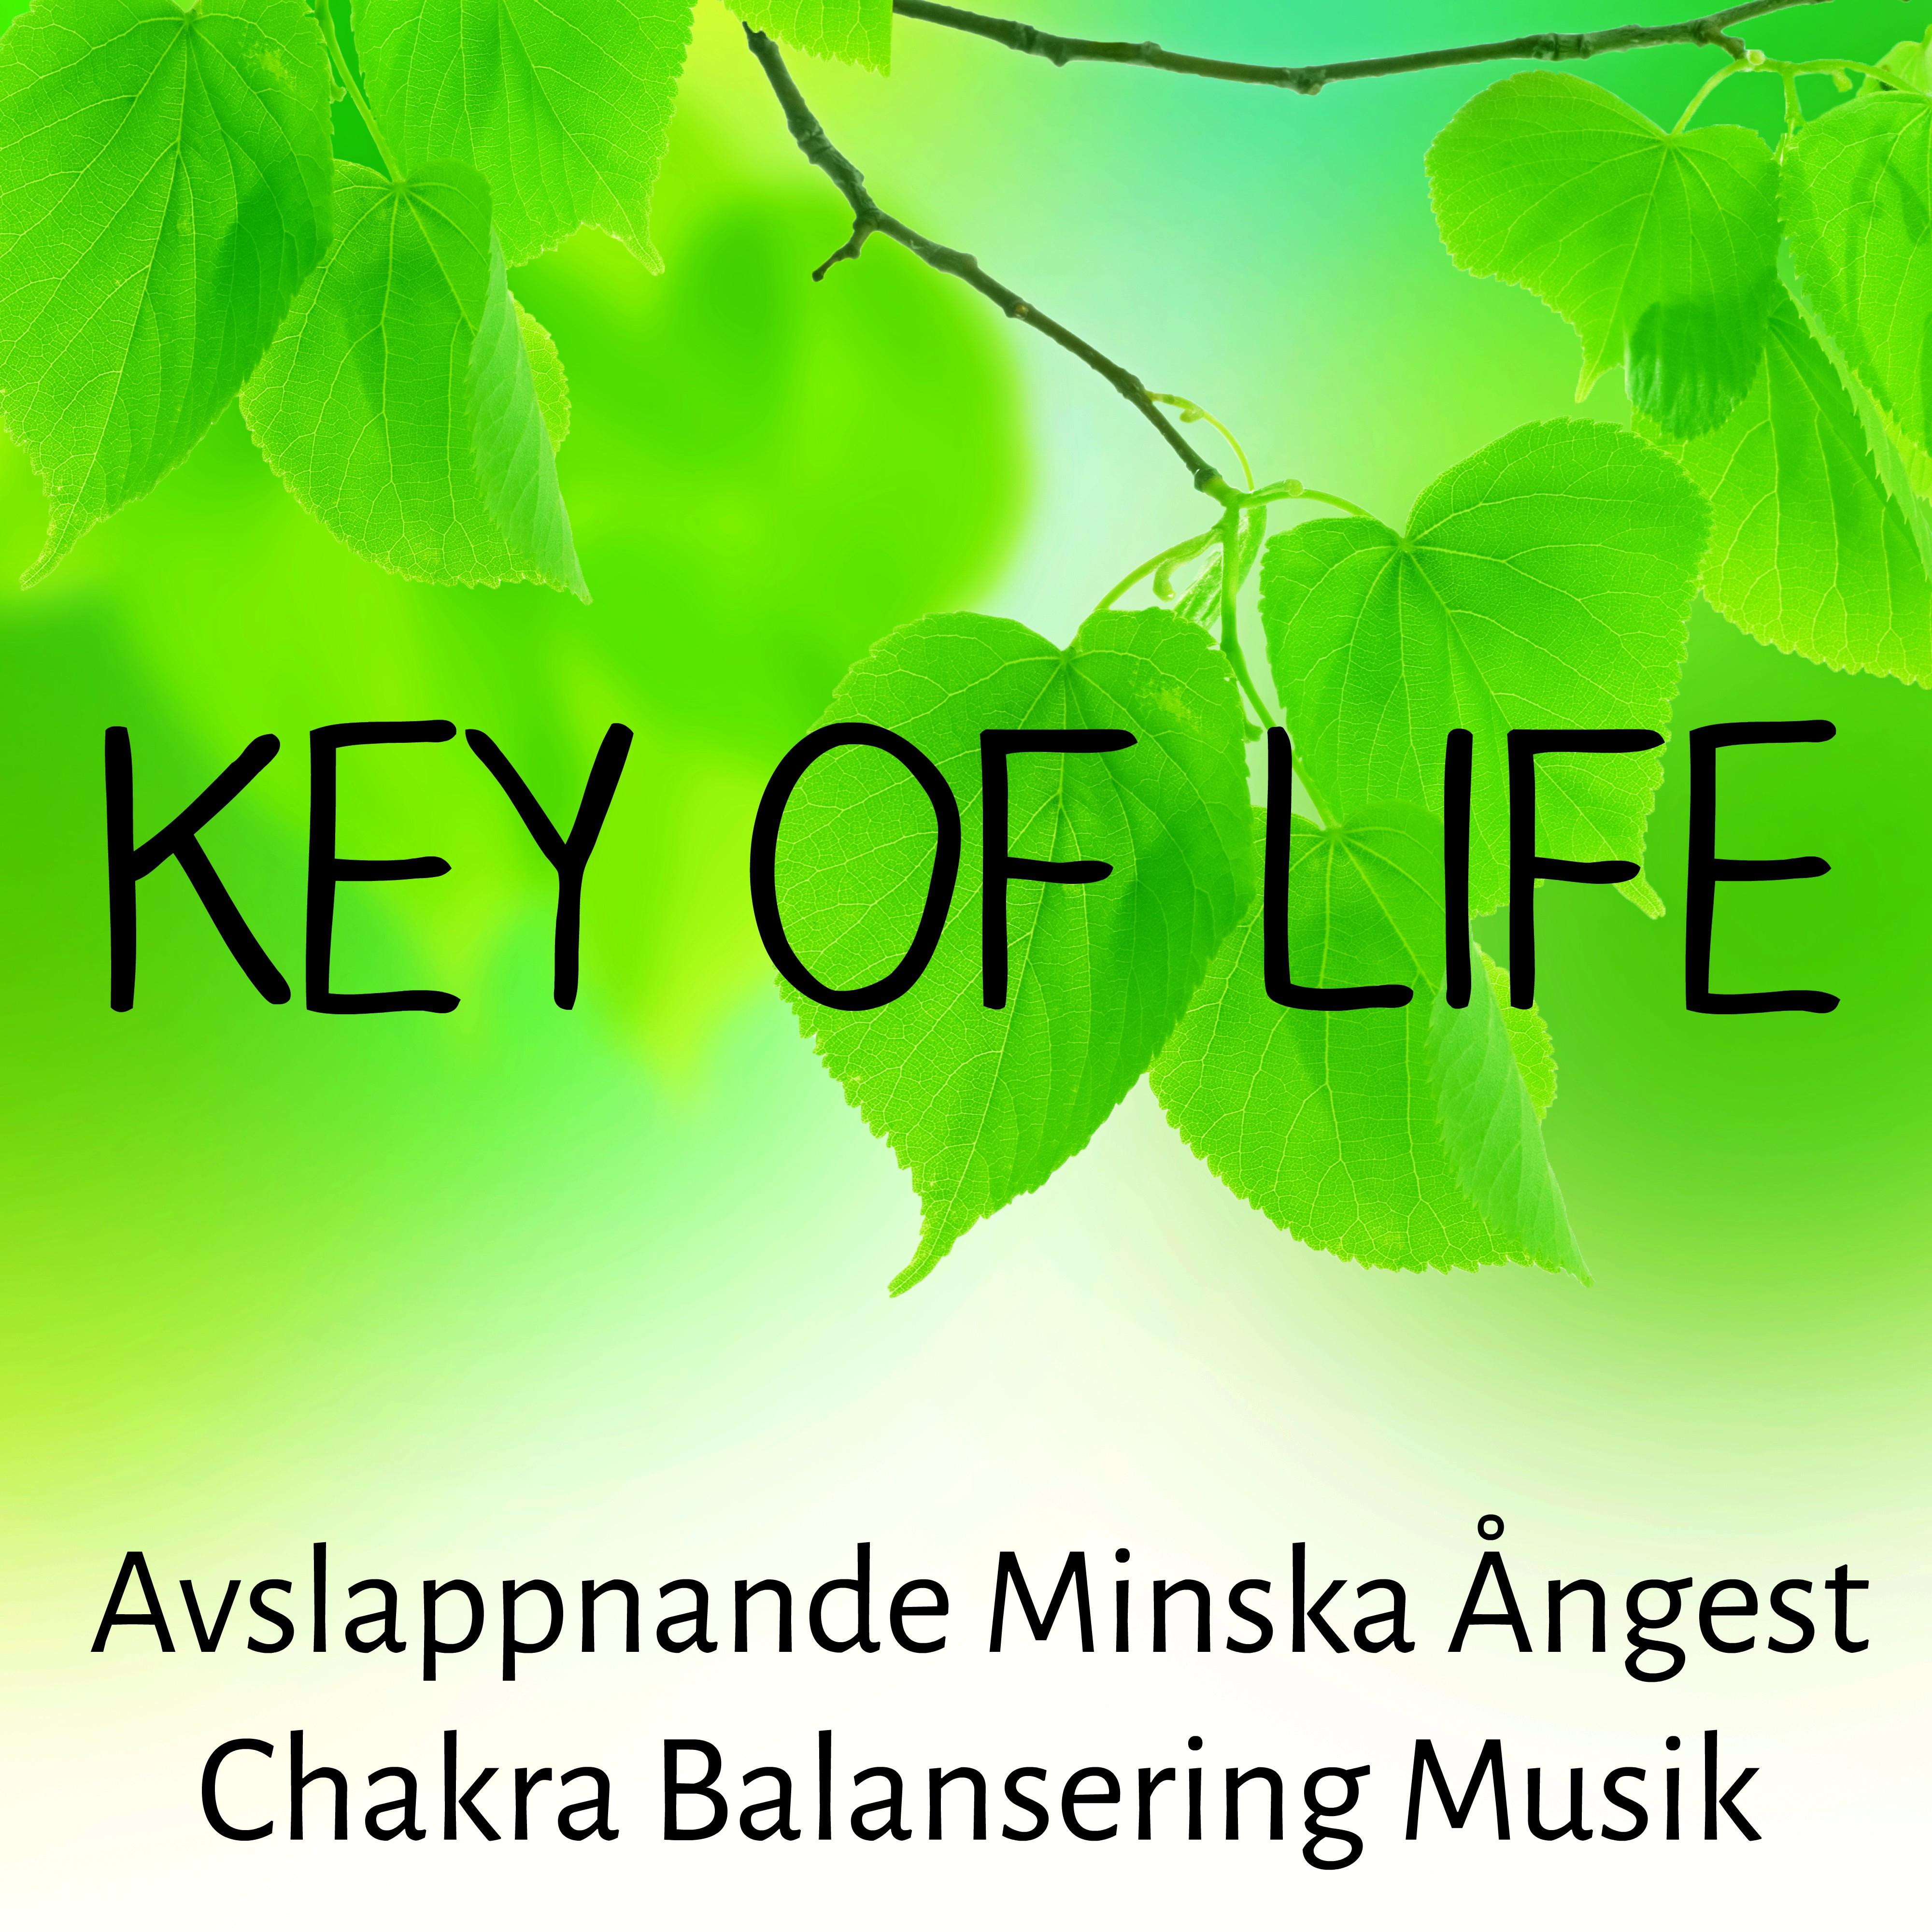 Key of Life - Avslappnande Minska Ångest Chakra Balansering Musik för Vägledd Meditation Chakra Alignment och Sömnlöshet Behandling